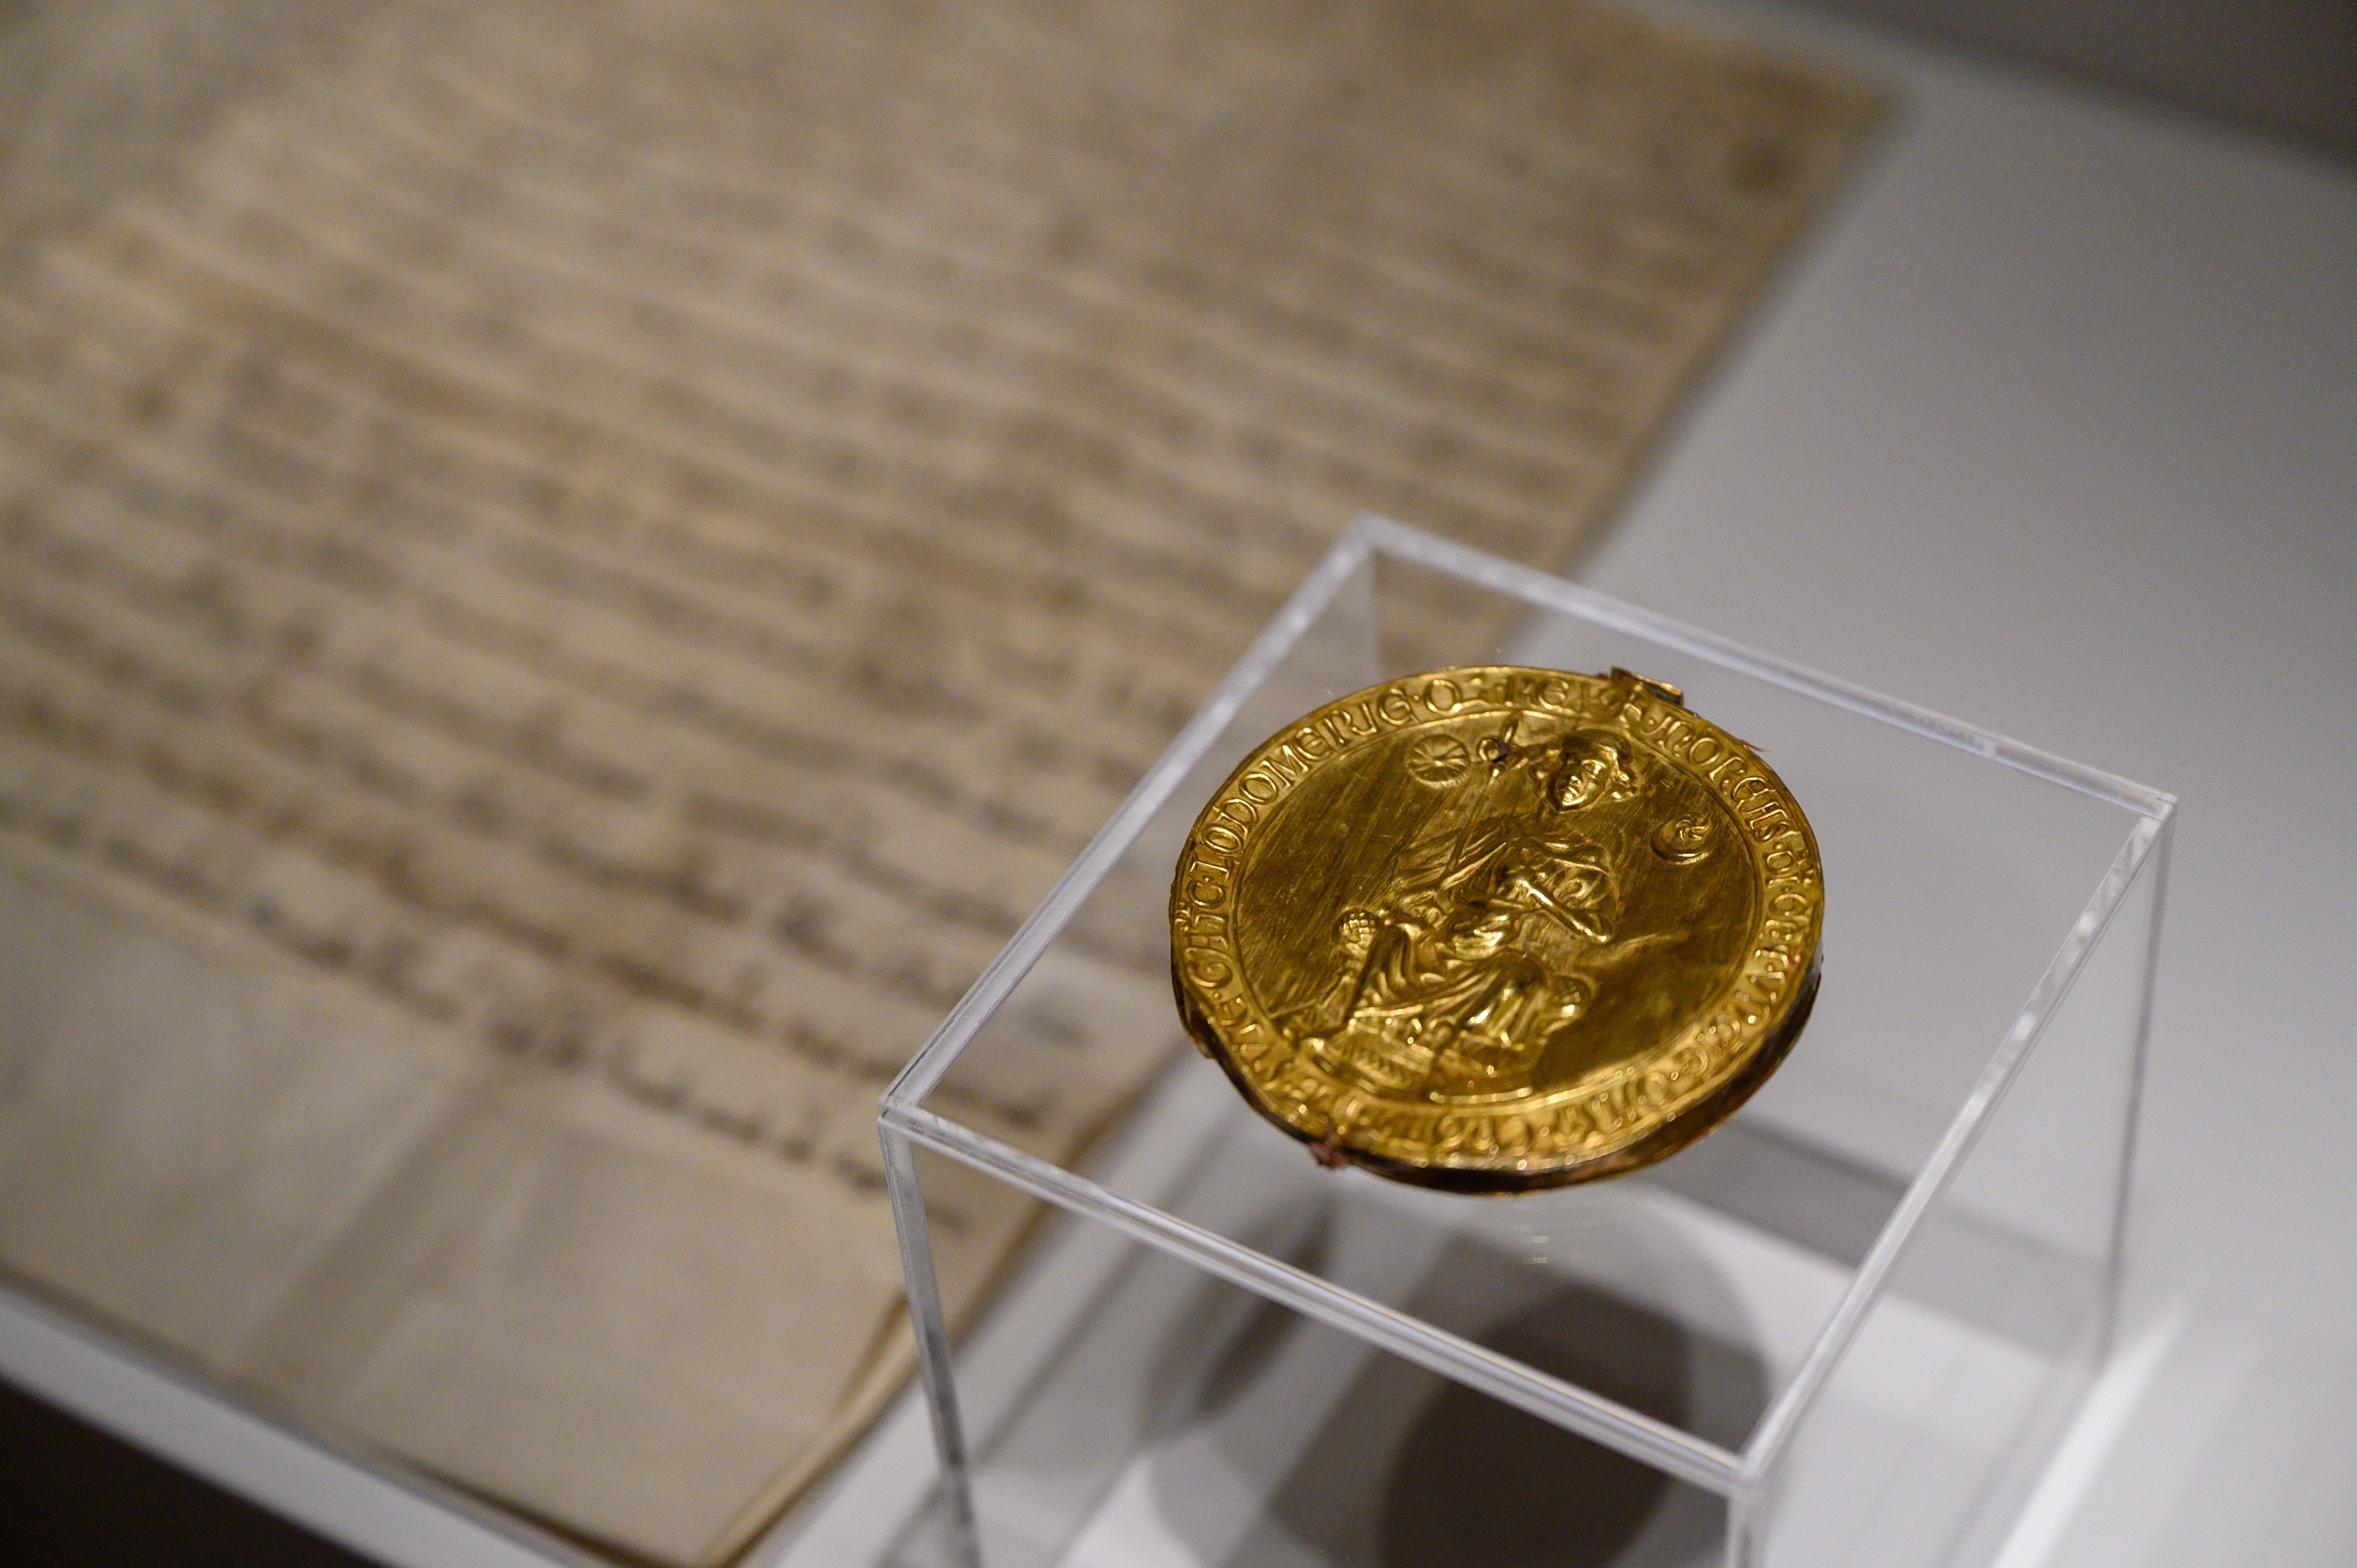 II. András királyi aranypecsétje, amiről a 31 pontból álló Aranybulla a nevét kapta, a székesfehérvári Szent István Király Múzeumban.